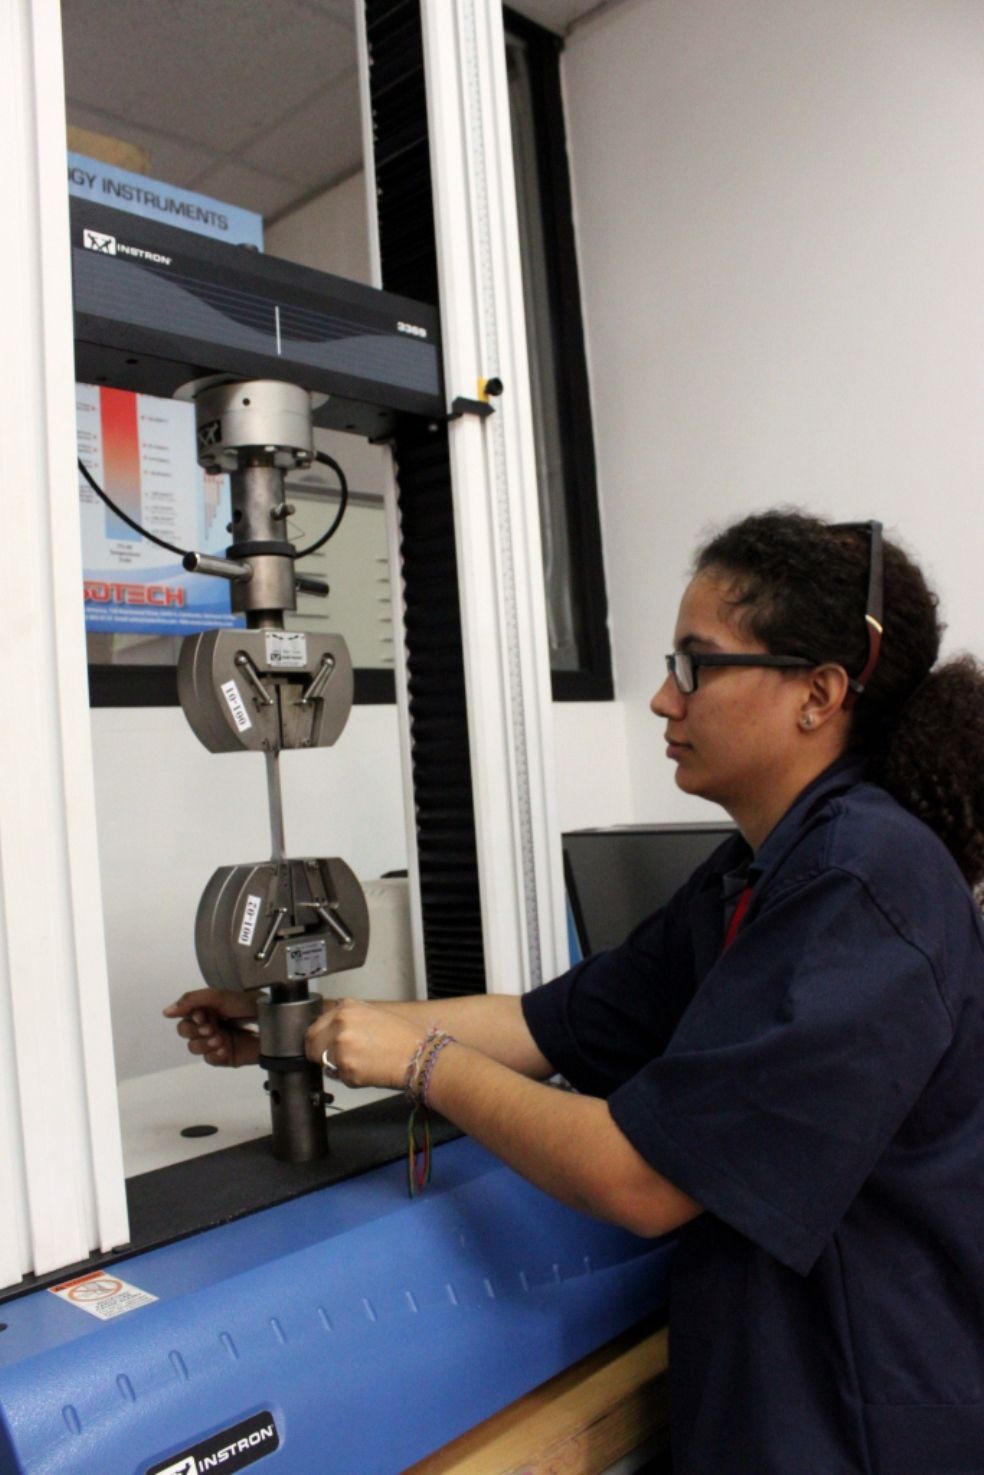 Selected%201-381fa21e Instituto Tecnológico de Santo Domingo - INTEC Laboratory receives accreditation from the EMA in metalworking